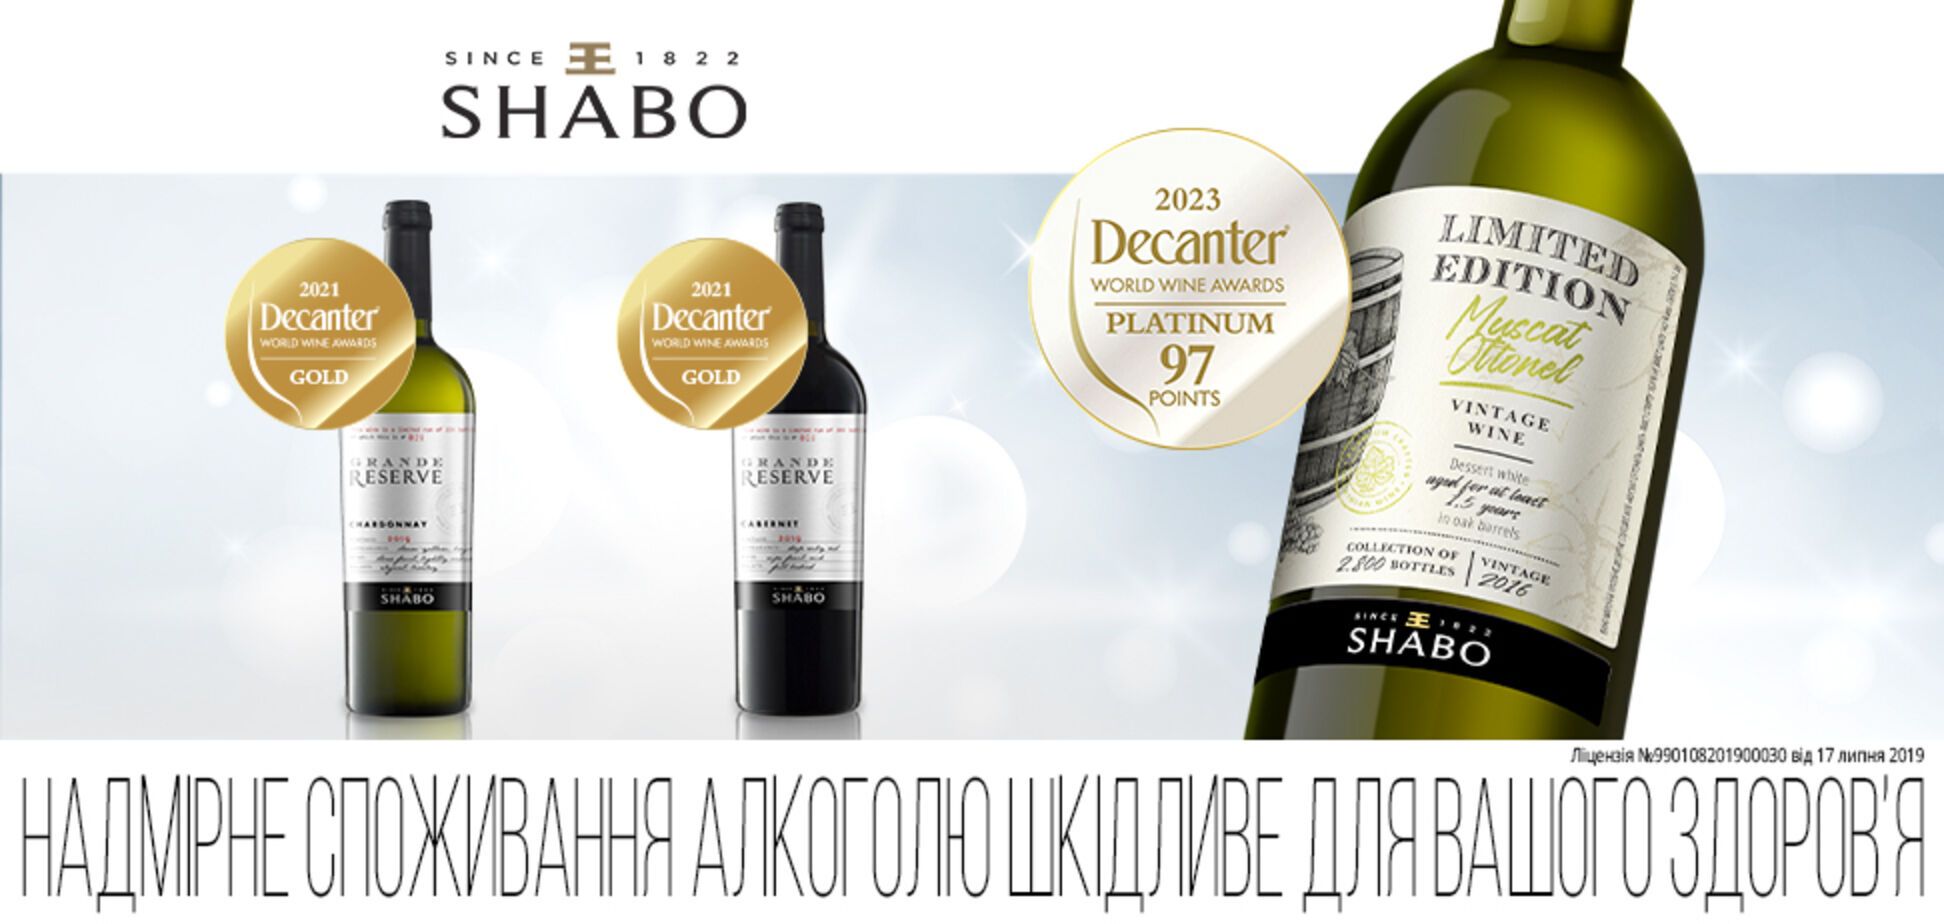 Украинское вино SHABO впервые получило платиновую медаль Decanter World Wine Awards 2023